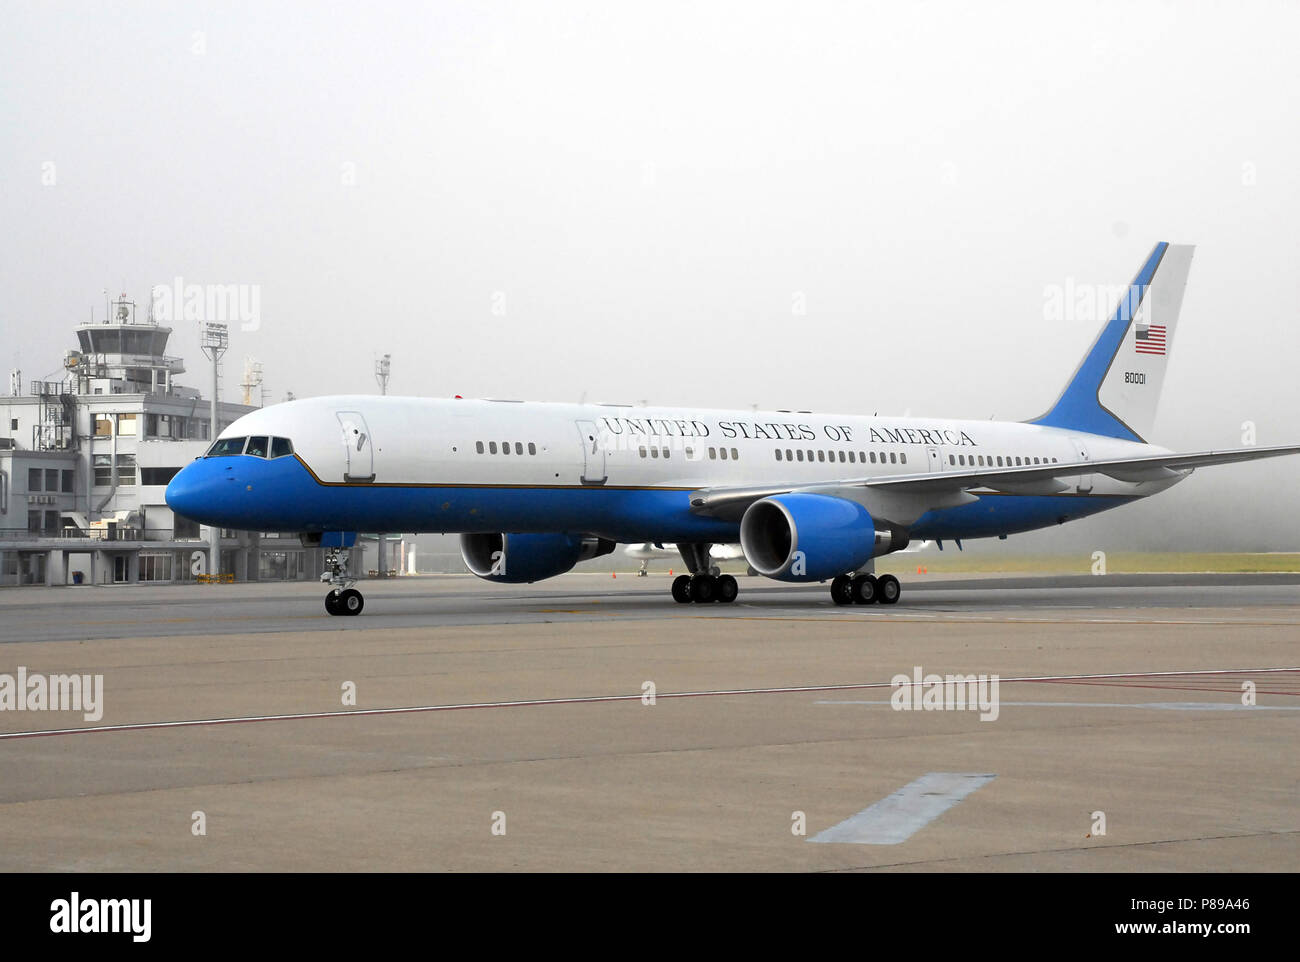 La secrétaire d'Etat arrive à Montevideo, Uruguay, Secrétaire d'État américaine Hillary Rodham Clinton's avion est 'roues vers le bas' dans l'aéroport international de Carrasco lors de son arrivée à l'Uruguay le 1 mars 2010. Banque D'Images